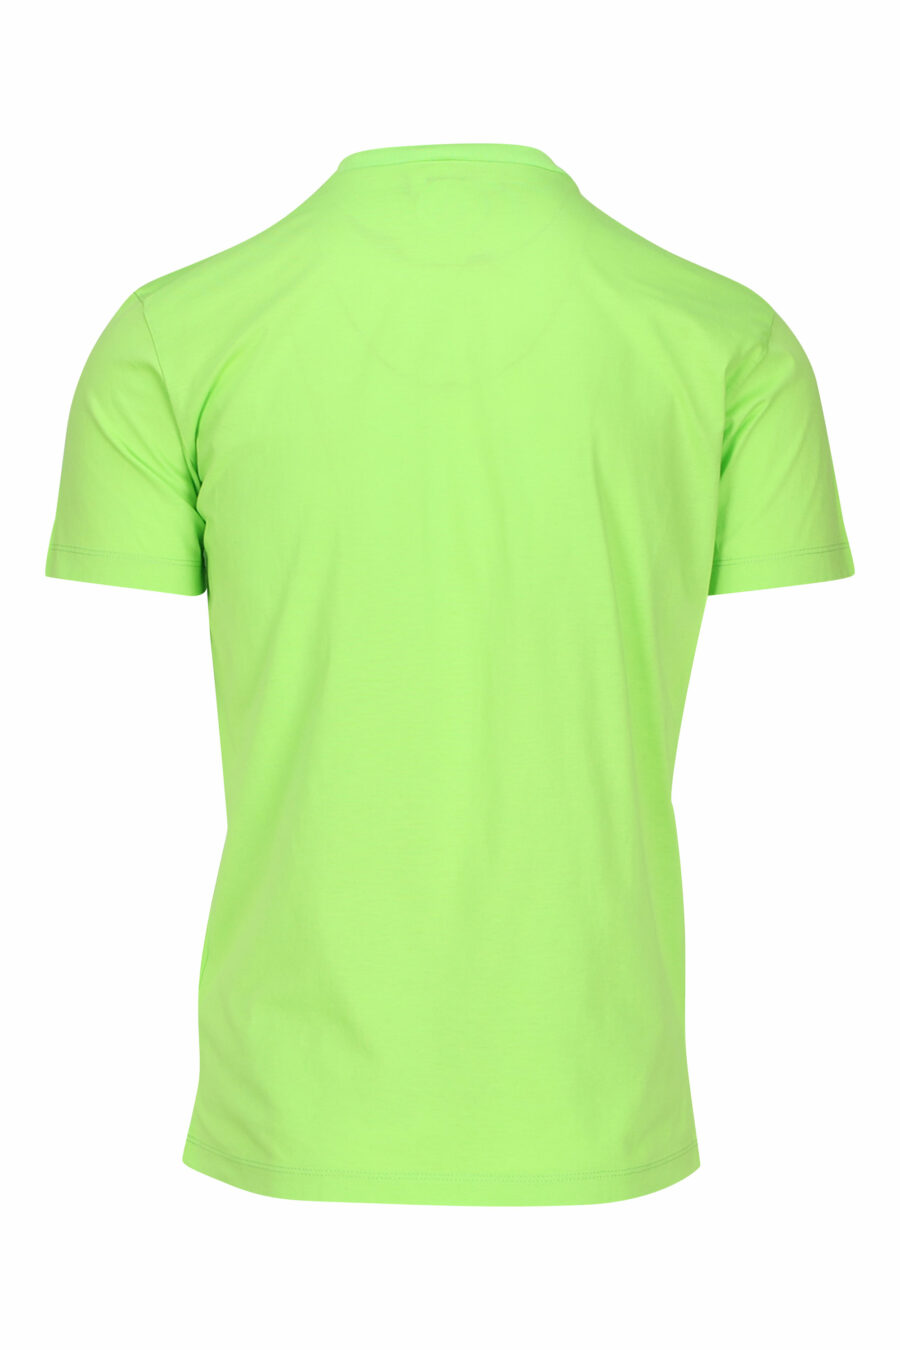 T-shirt verde lima com maxilogo "icon" preto - 8054148035594 1